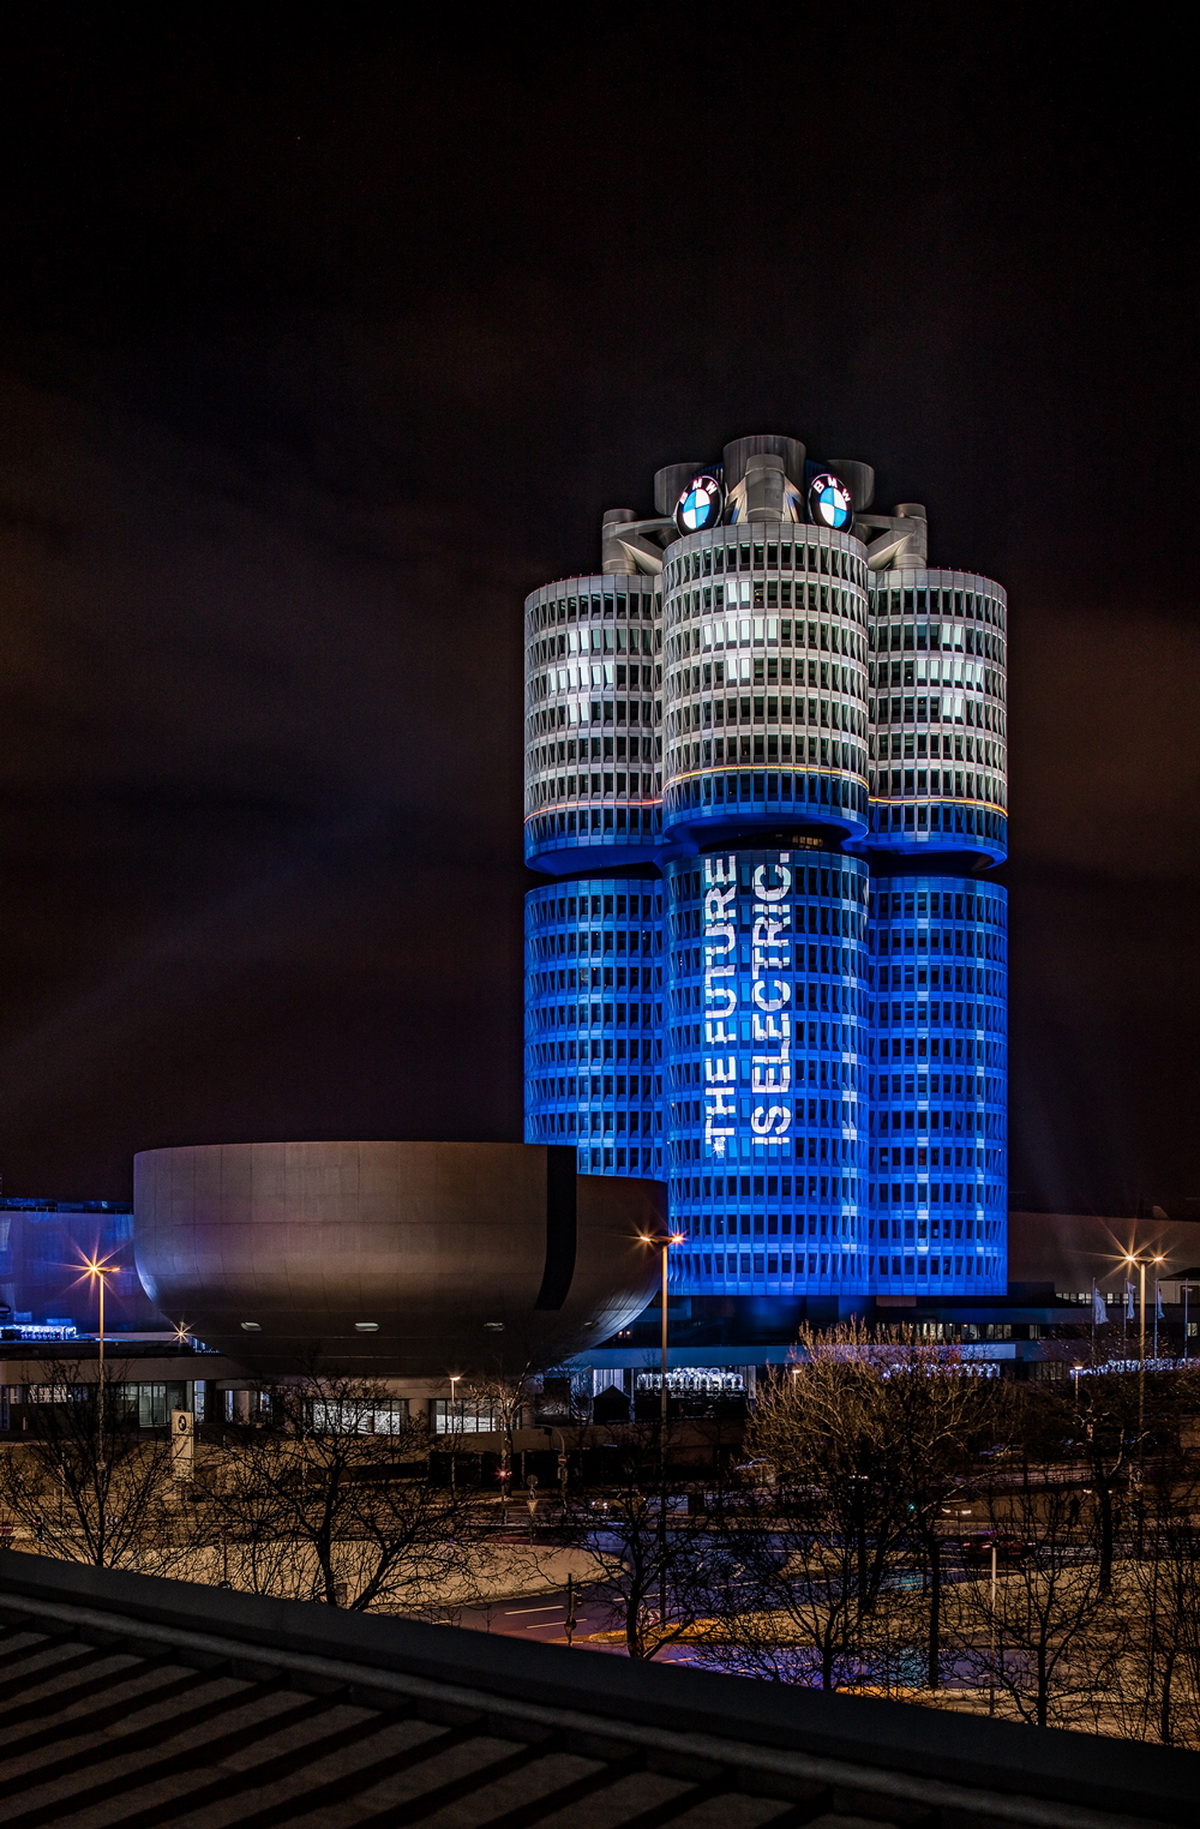 [新聞照片四] BMW德國慕尼黑總部的四汽缸大廈呈現精彩的燈光表演, 慶祝2017年全球銷售提前達到10萬輛電動車的年度目標.jpg